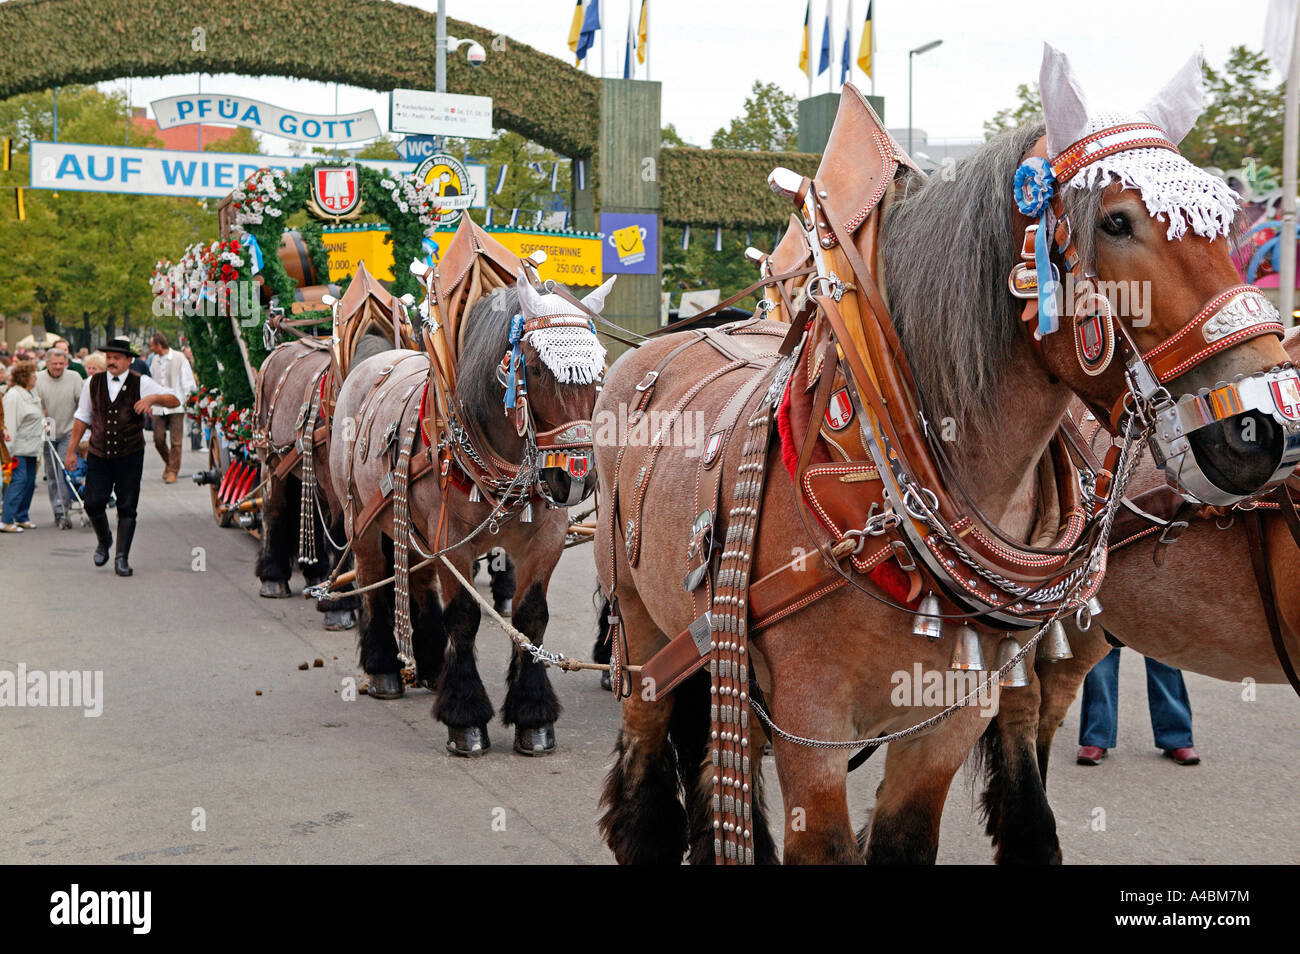 Pferdegespann auf dem Muenchner Oktoberfest, harnessed horse team at Oktoberfest in Munich Stock Photo